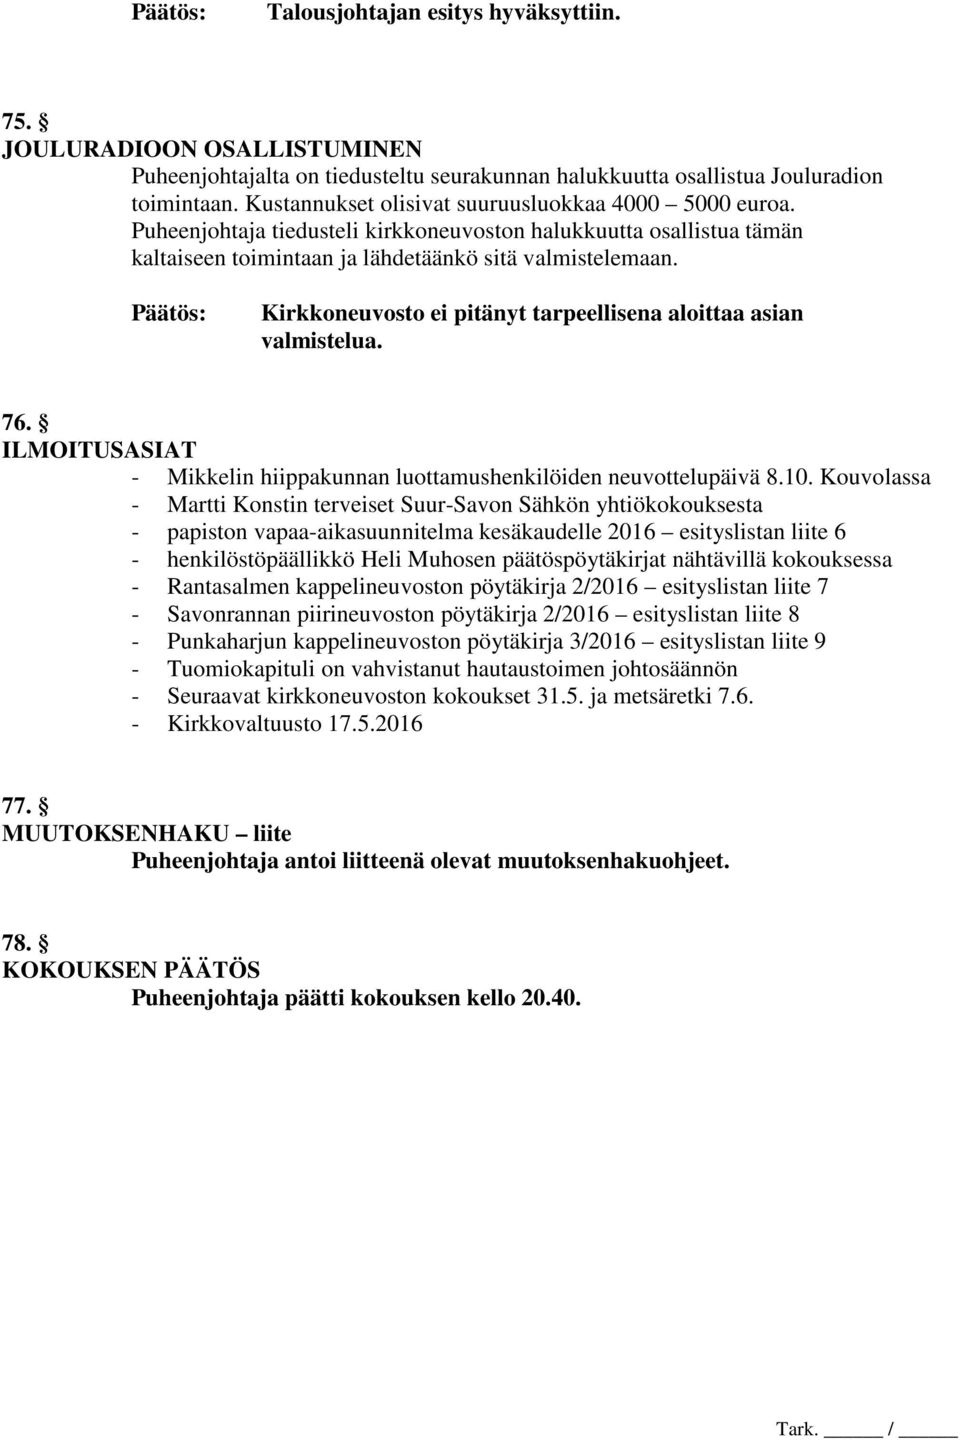 Kirkkoneuvosto ei pitänyt tarpeellisena aloittaa asian valmistelua. 76. ILMOITUSASIAT - Mikkelin hiippakunnan luottamushenkilöiden neuvottelupäivä 8.10.